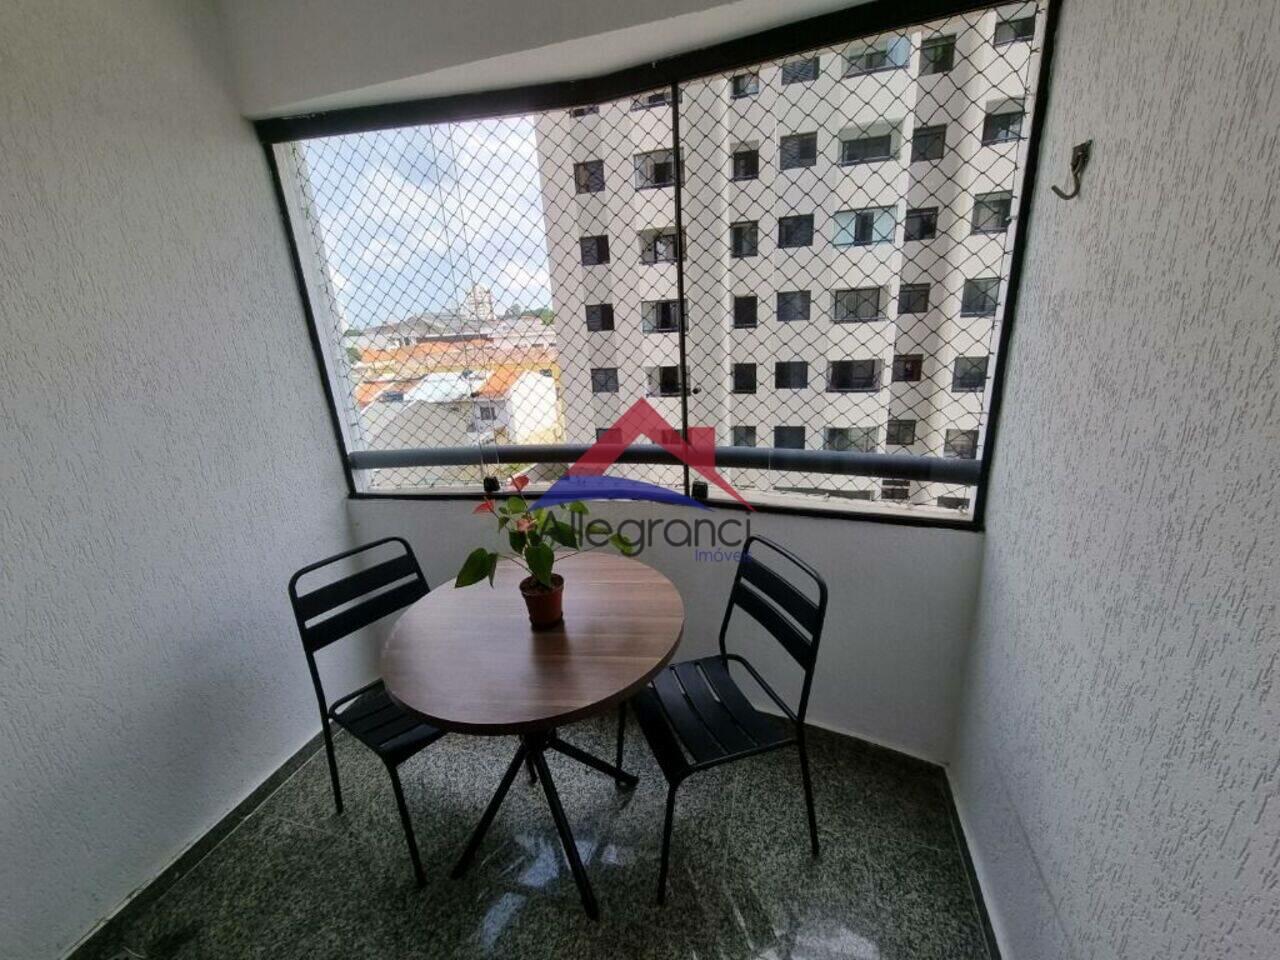 Apartamento Mooca, São Paulo - SP